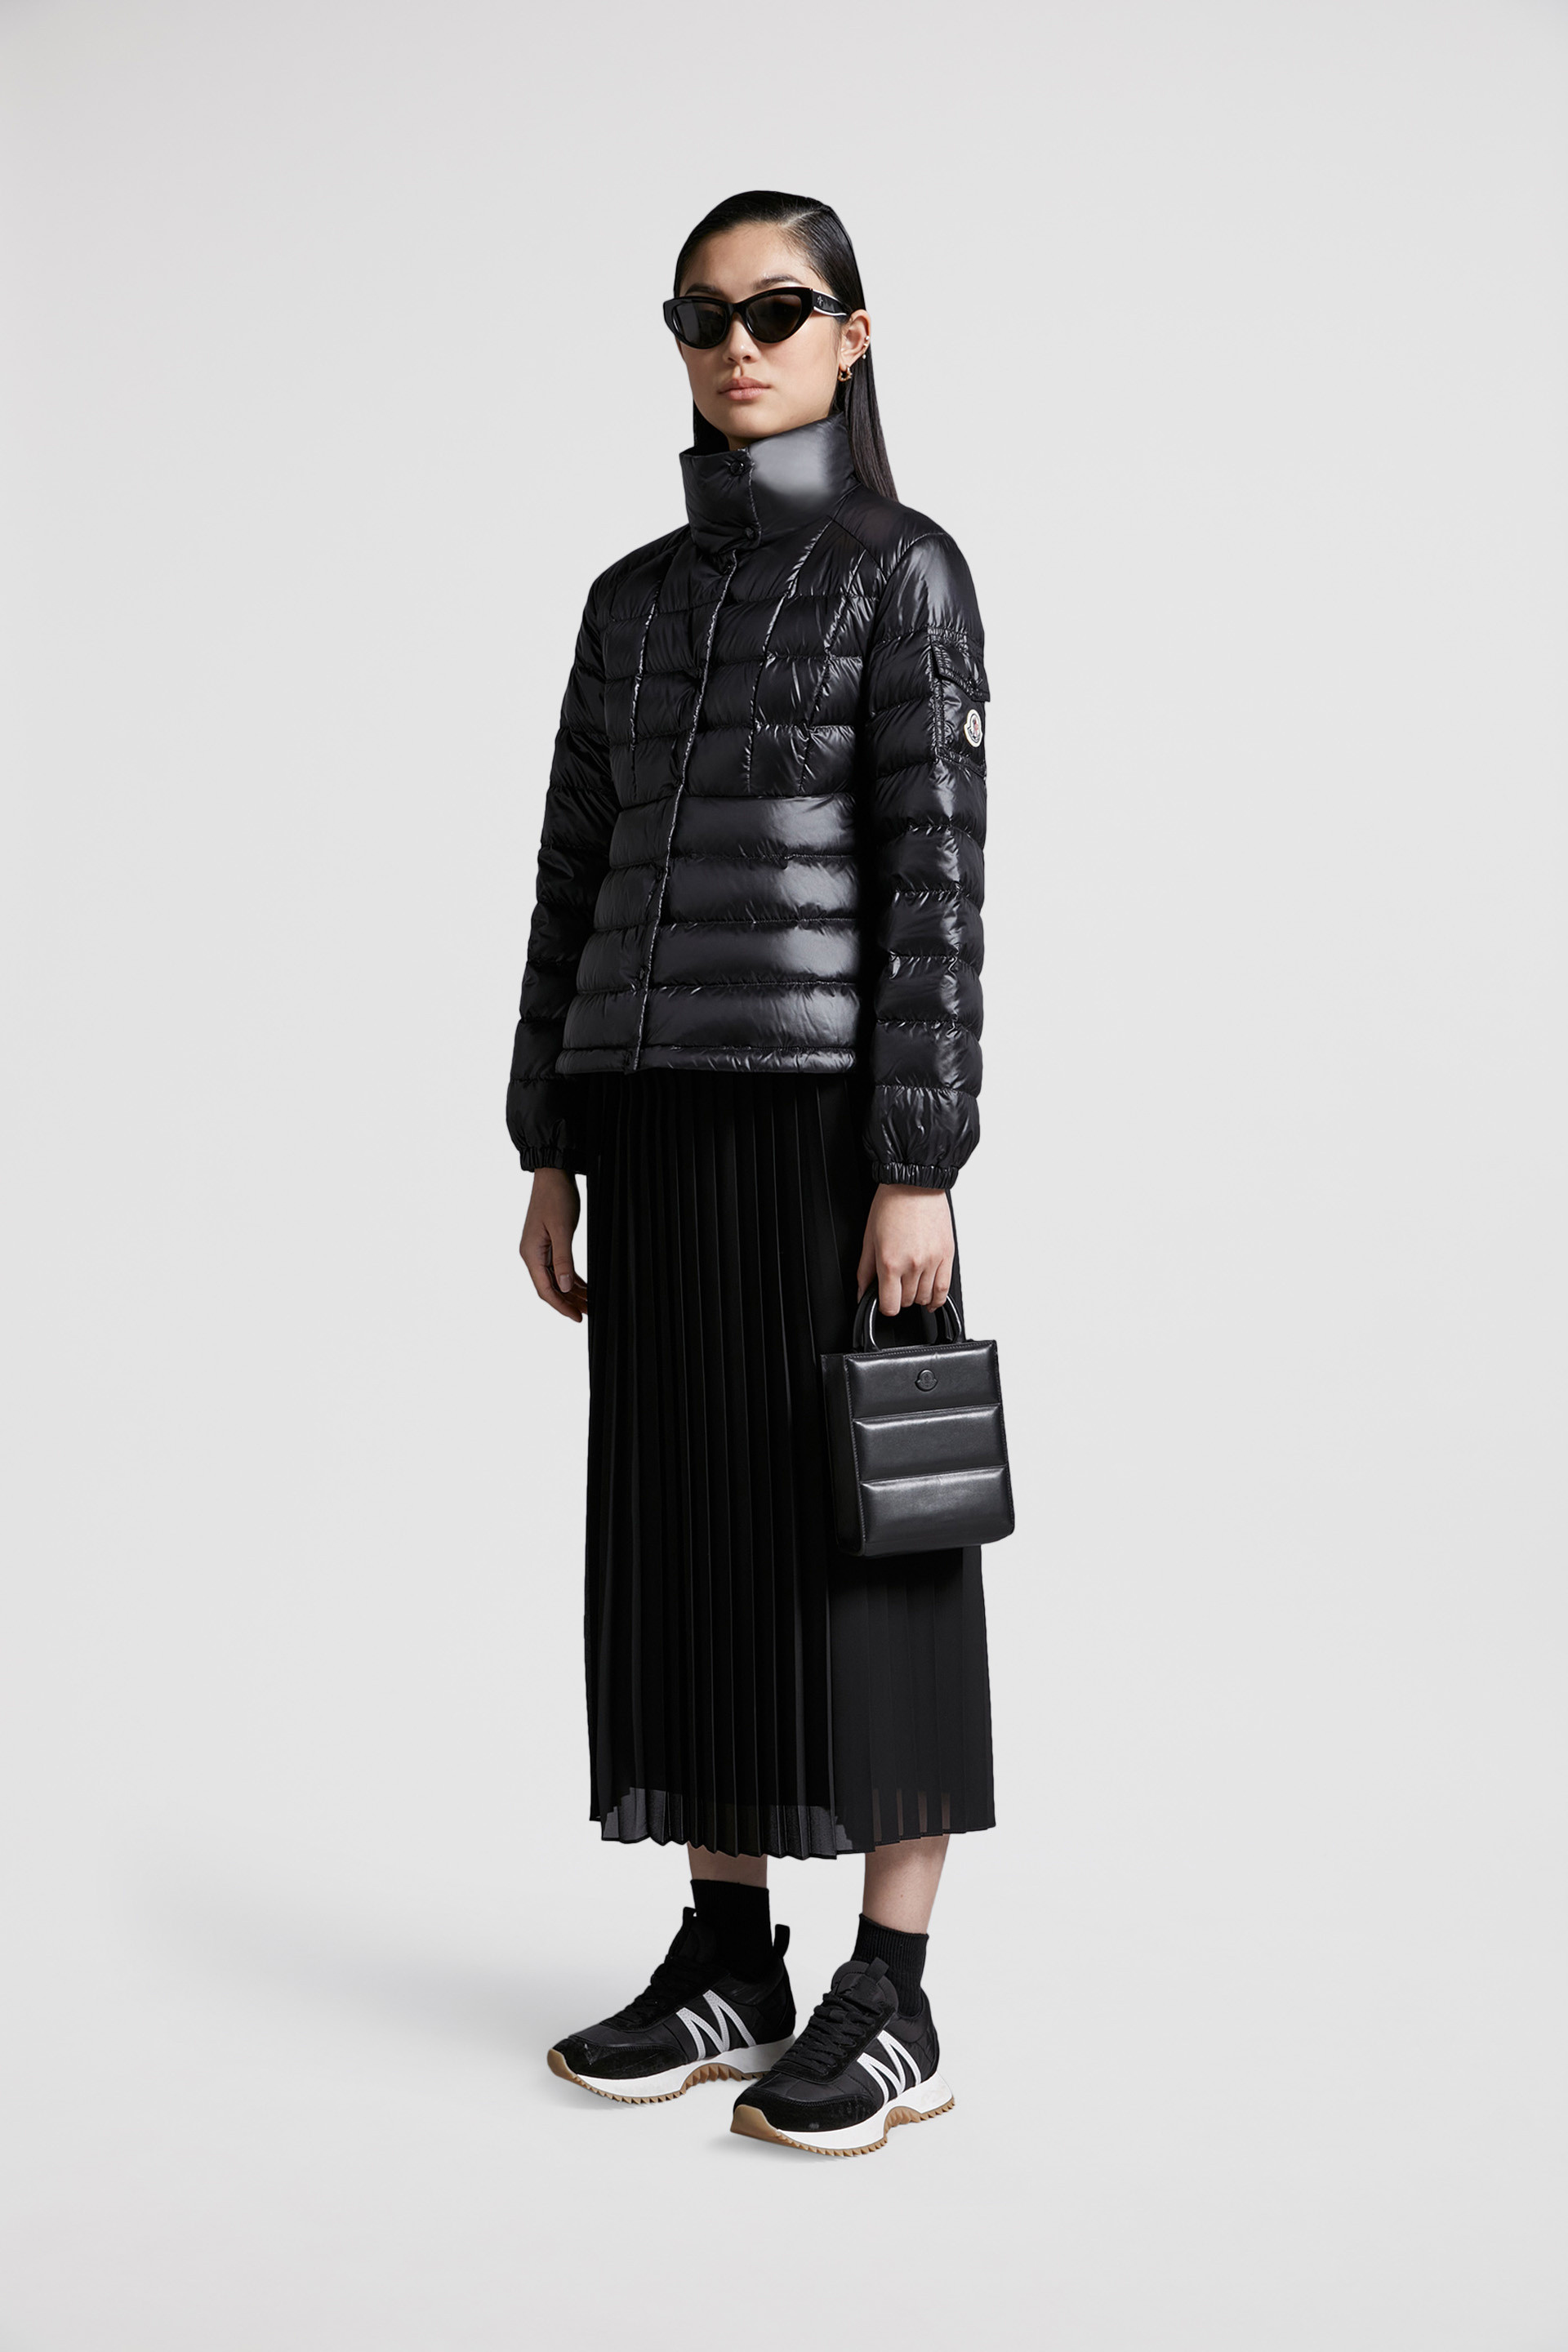 黑色Aminia女士短款羽绒服夹克外套- 短款羽绒服for 女装| Moncler HK